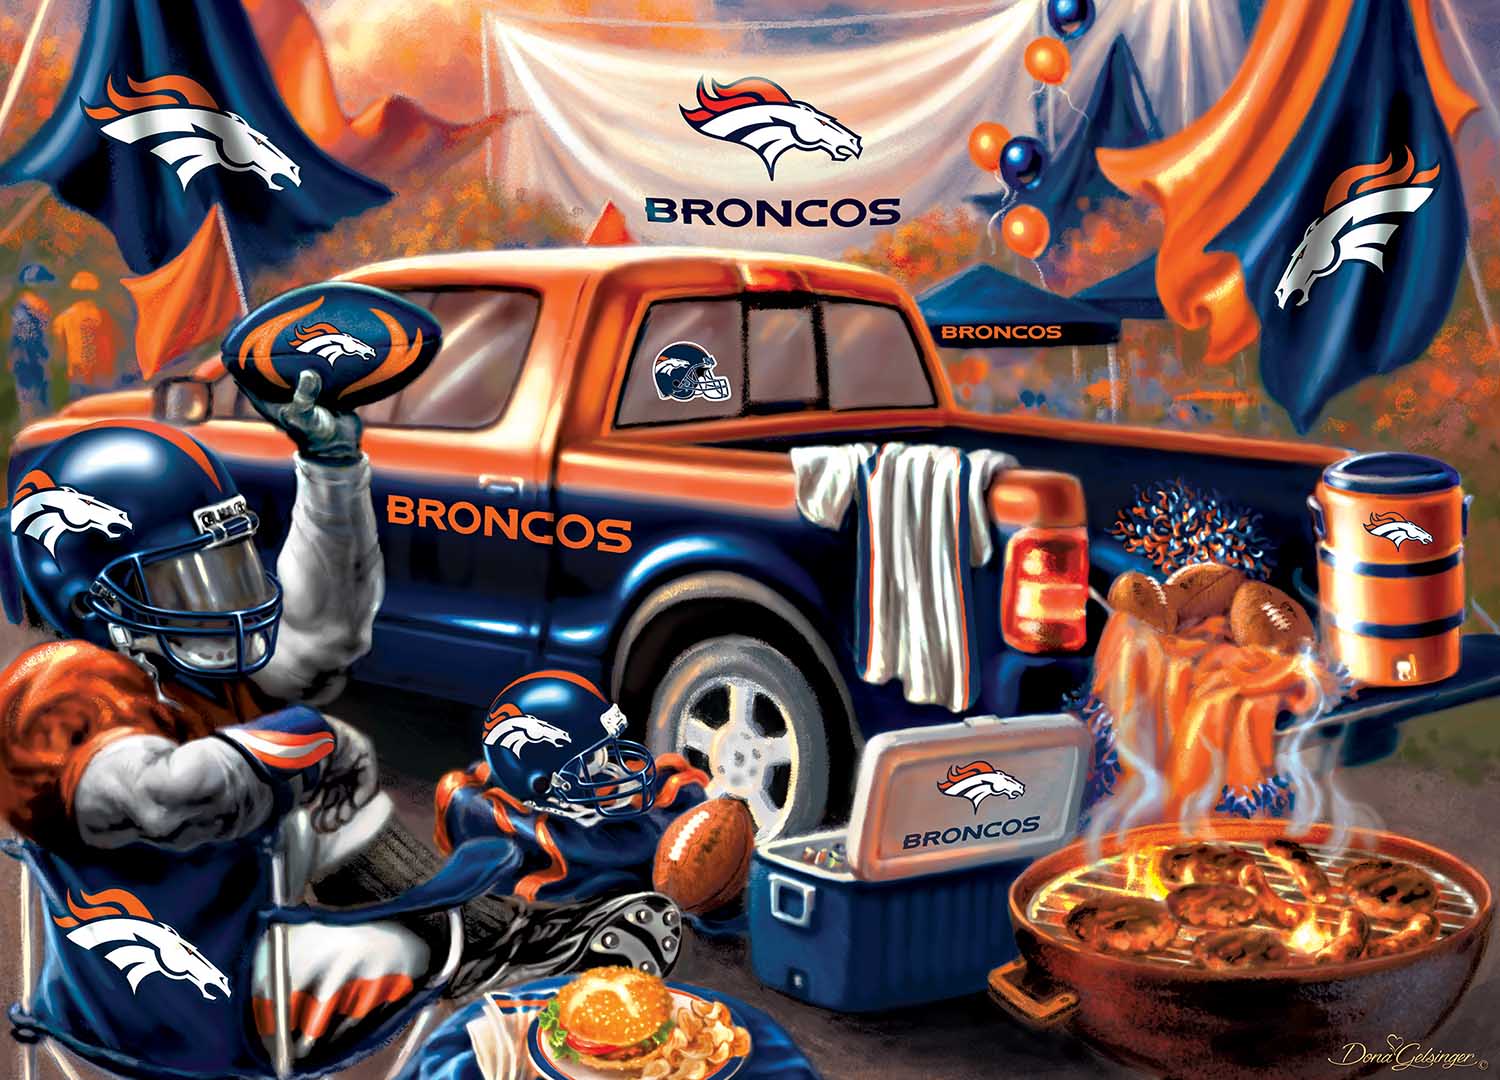 Denver Broncos Gameday